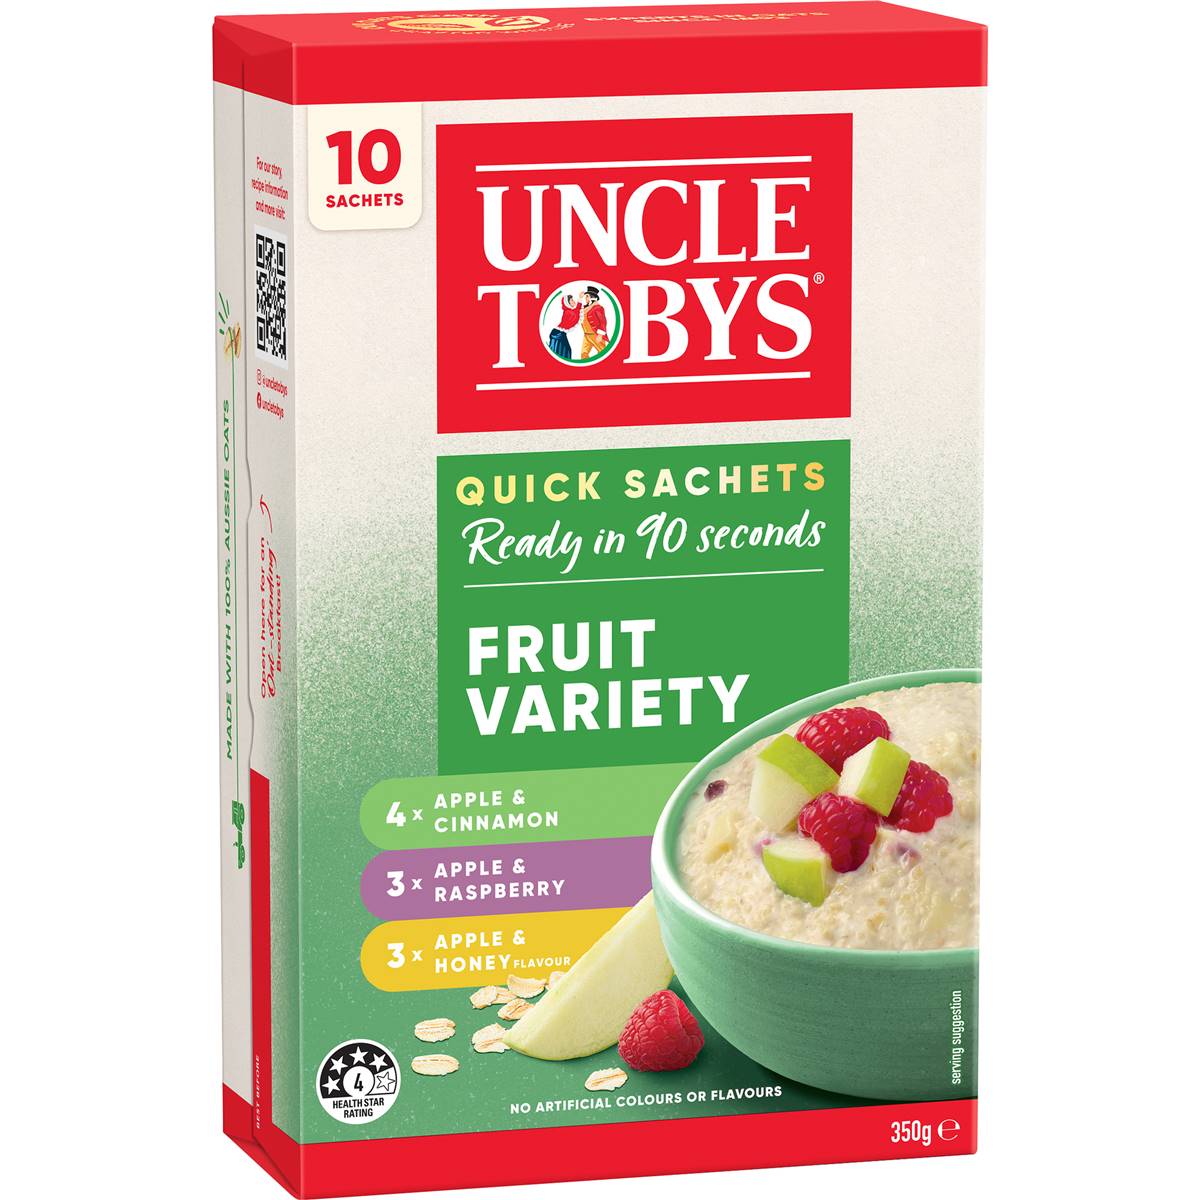 Calories in Uncle Tobys Oats Porridge Quick Sachets Fruit Variety